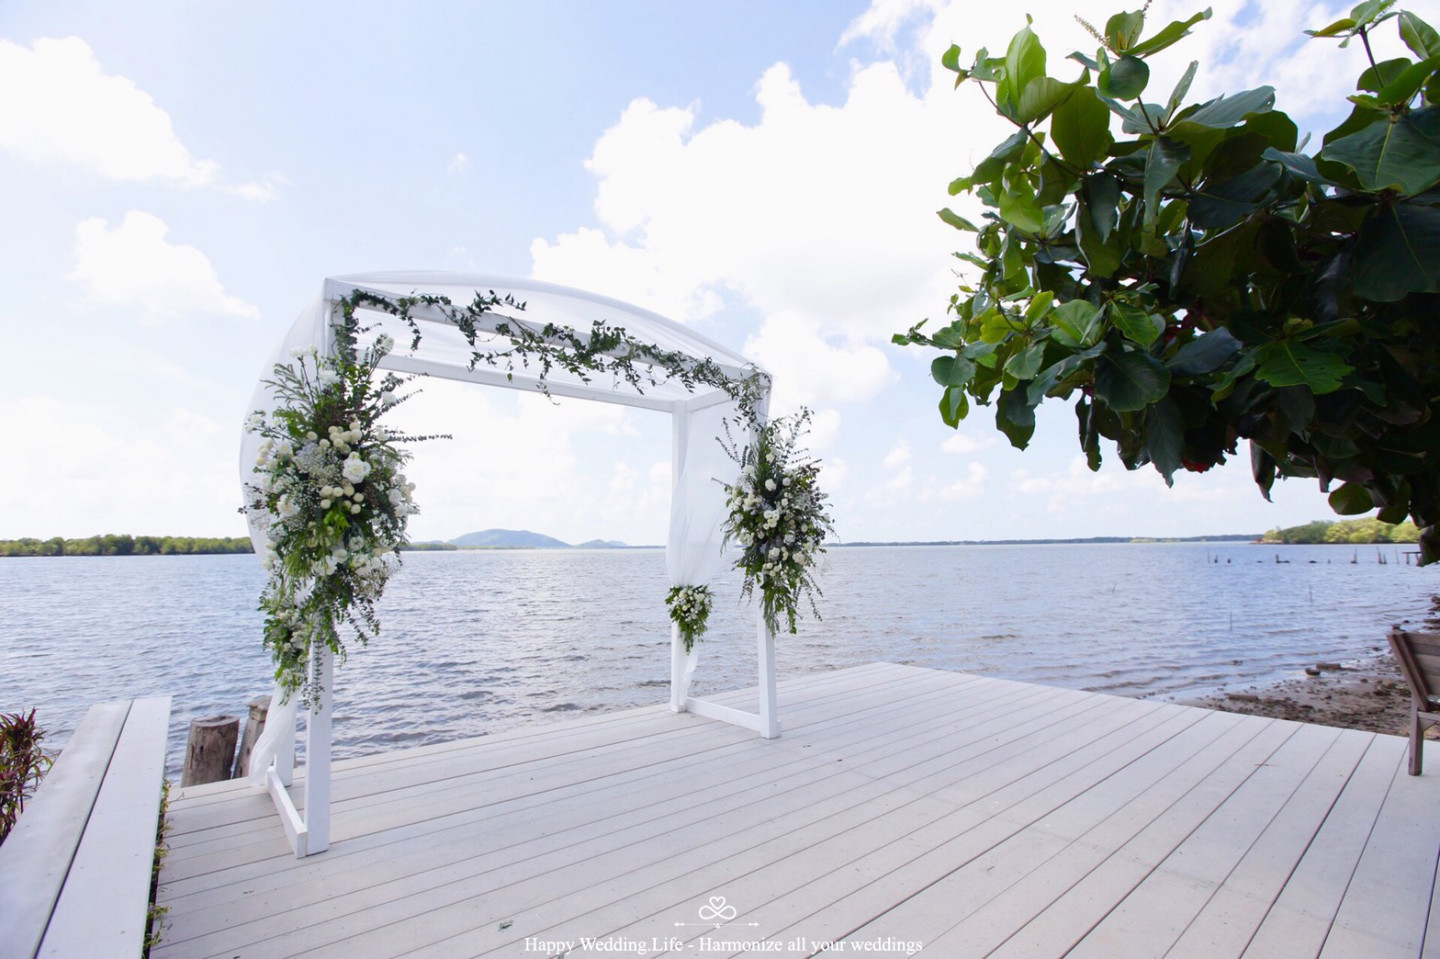 งานแต่งงานธีมสีขาวสุดเรียบง่าย - Harmonize Wedding planner bangkok